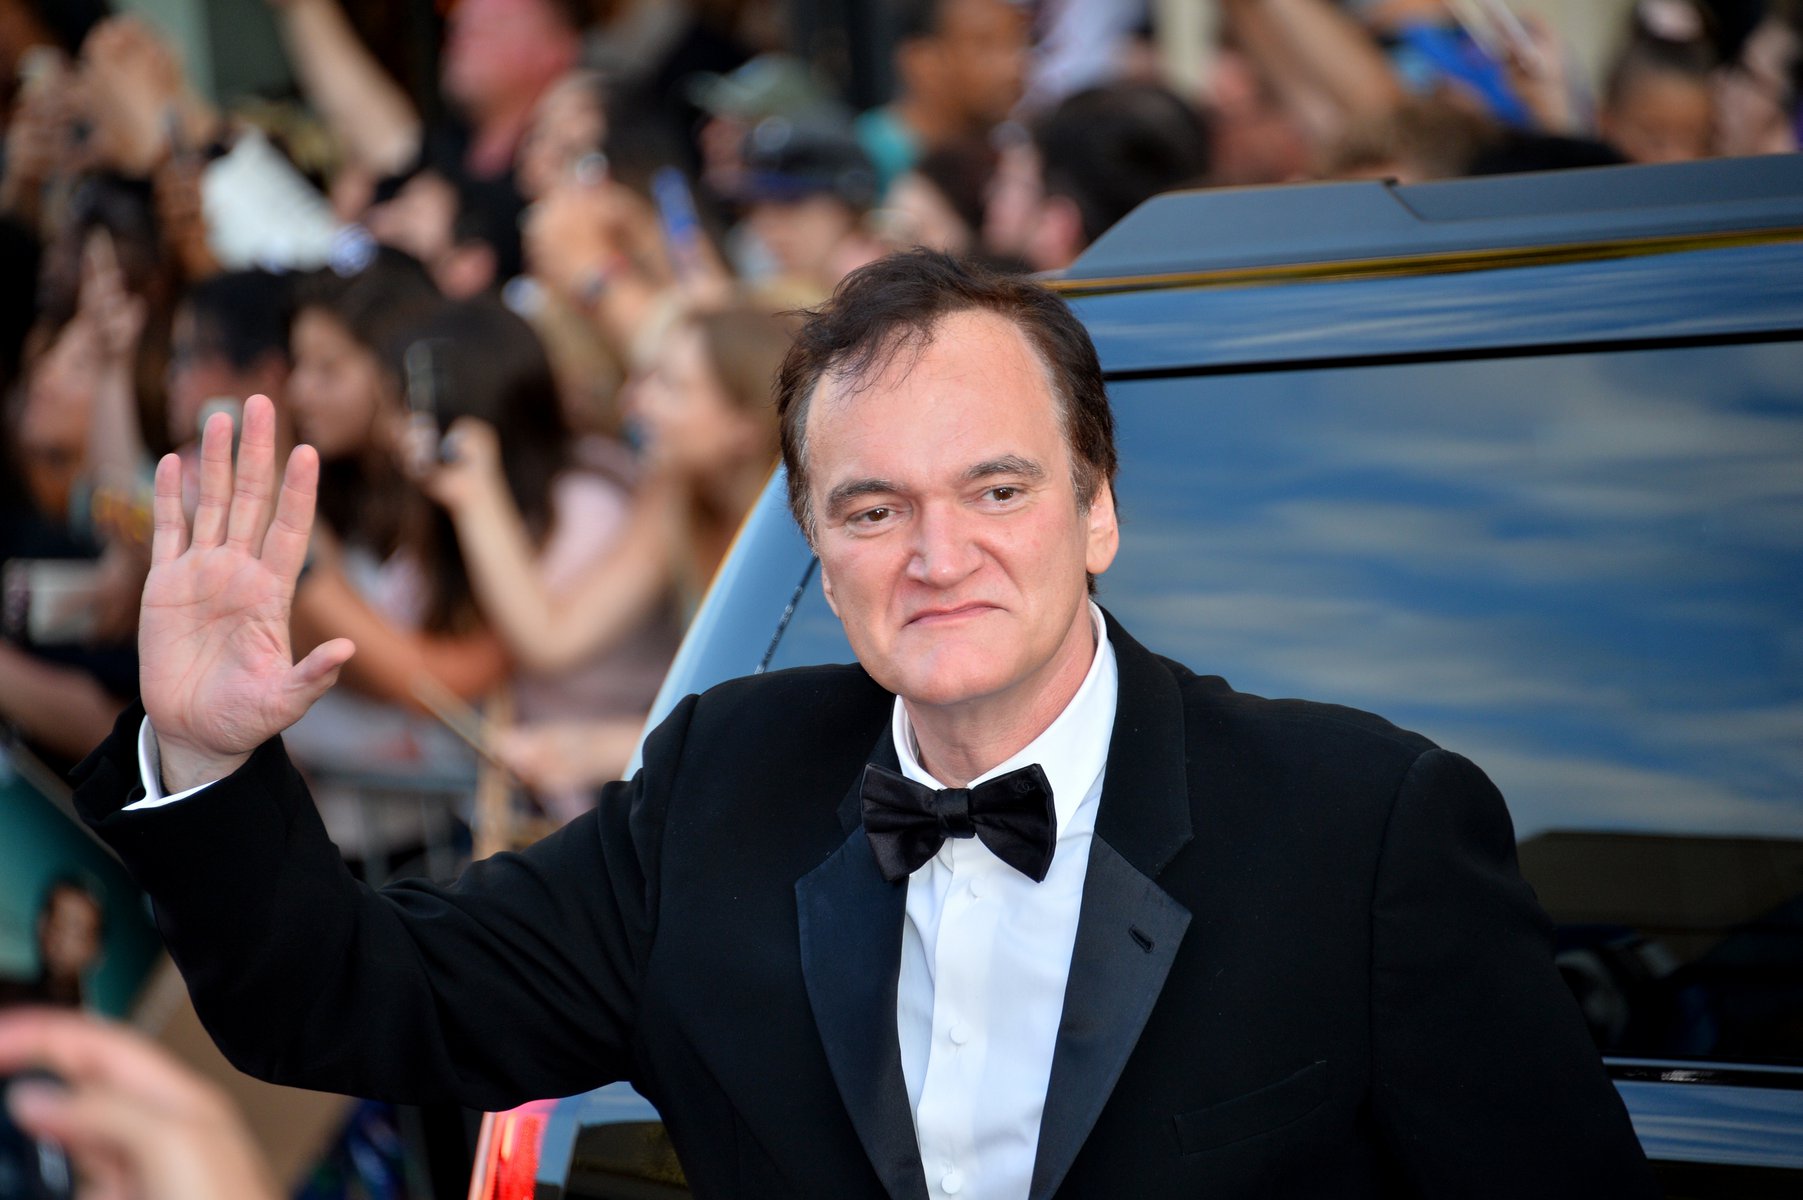 Μετά τον Scorsese, και ο Tarantino κατά των superhero films: «Οι σημερινές ταινίες δεν είναι καλές γιατί επικρατεί “Marvel-ισμός”»: